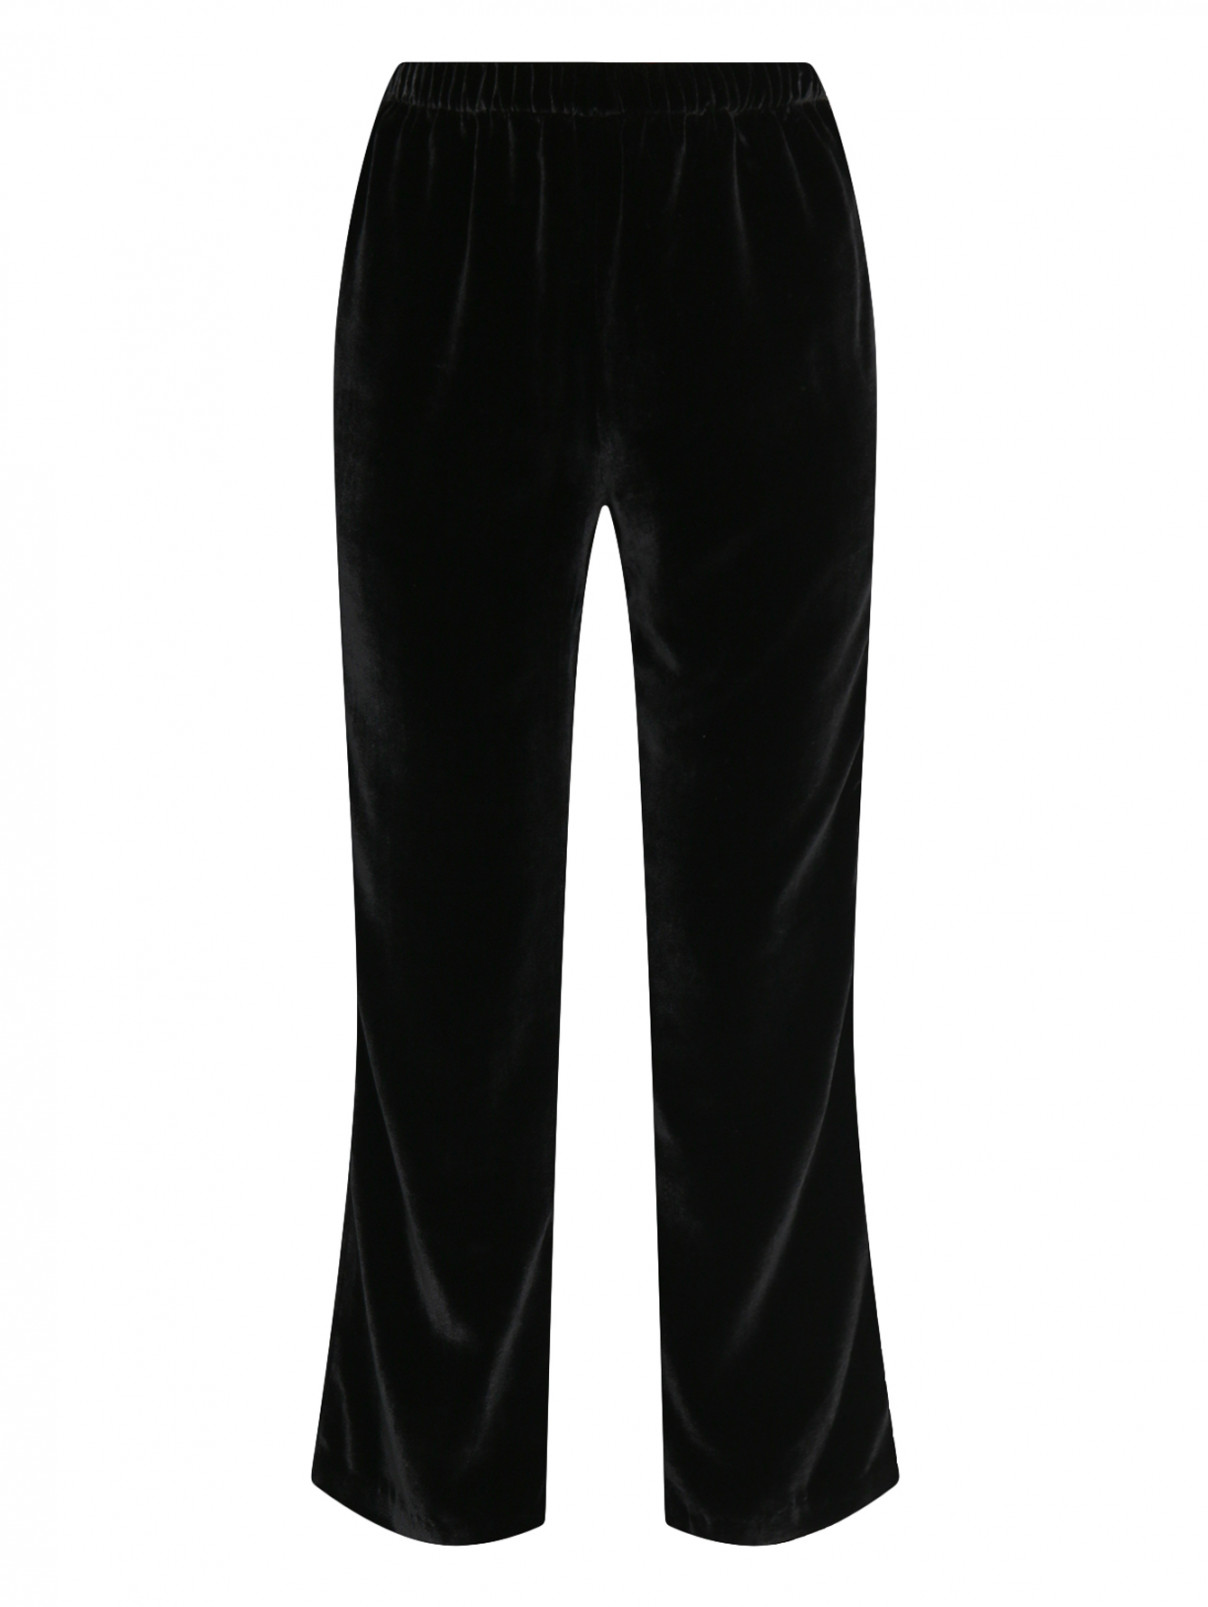 Бархатные укороченные брюки из шелка на резинке Ermanno Scervino  –  Общий вид  – Цвет:  Черный